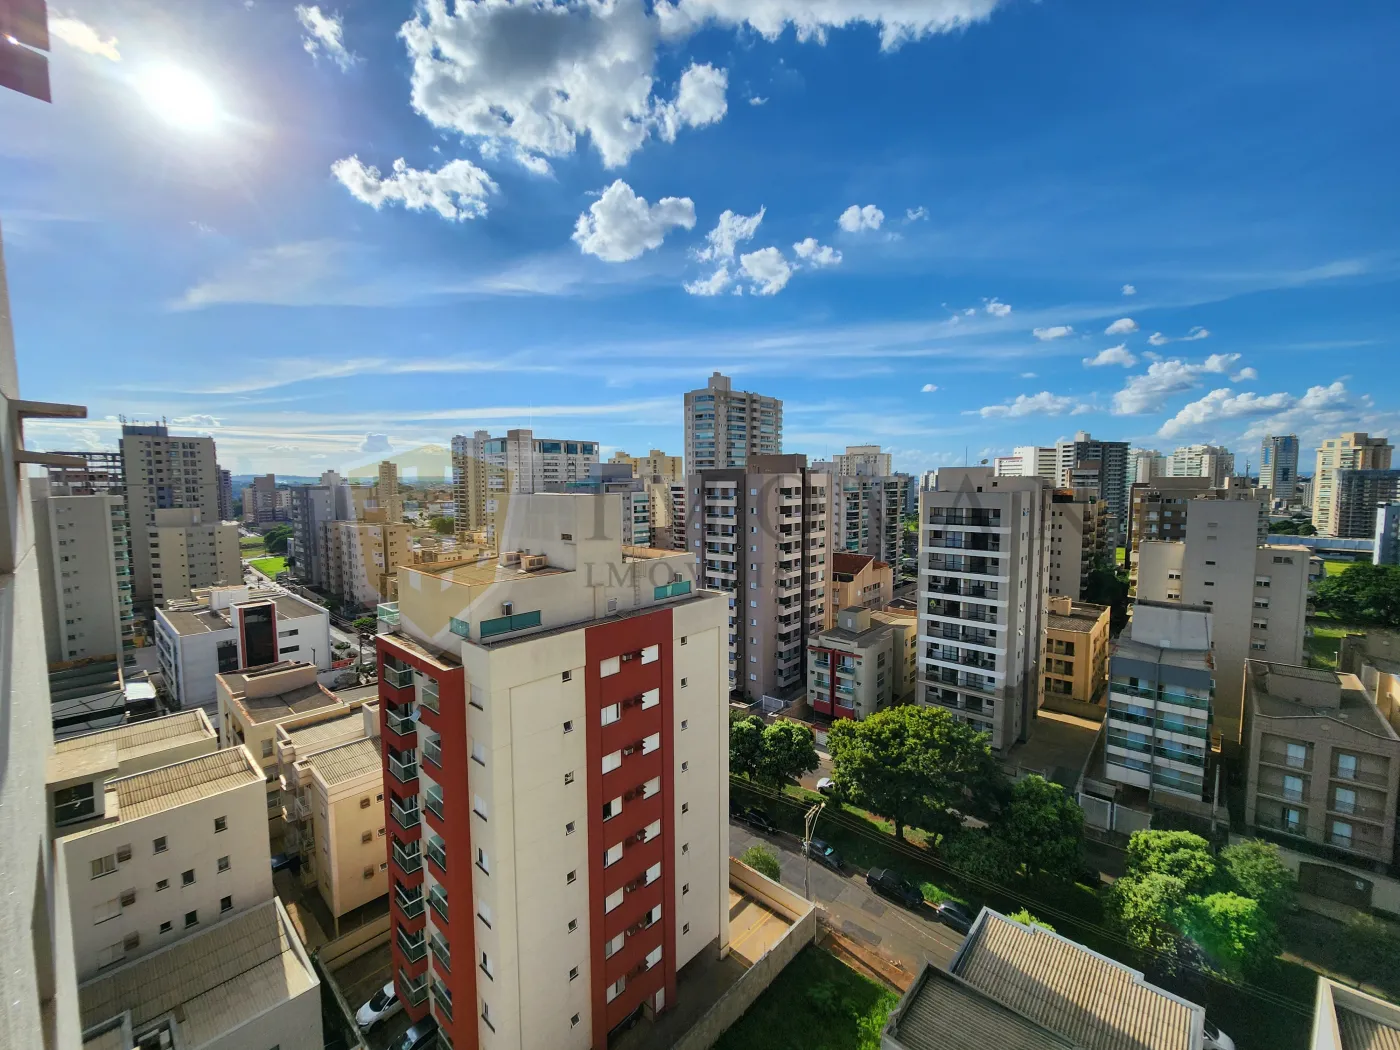 Alugar Apartamento / Padrão em Ribeirão Preto R$ 900,00 - Foto 17